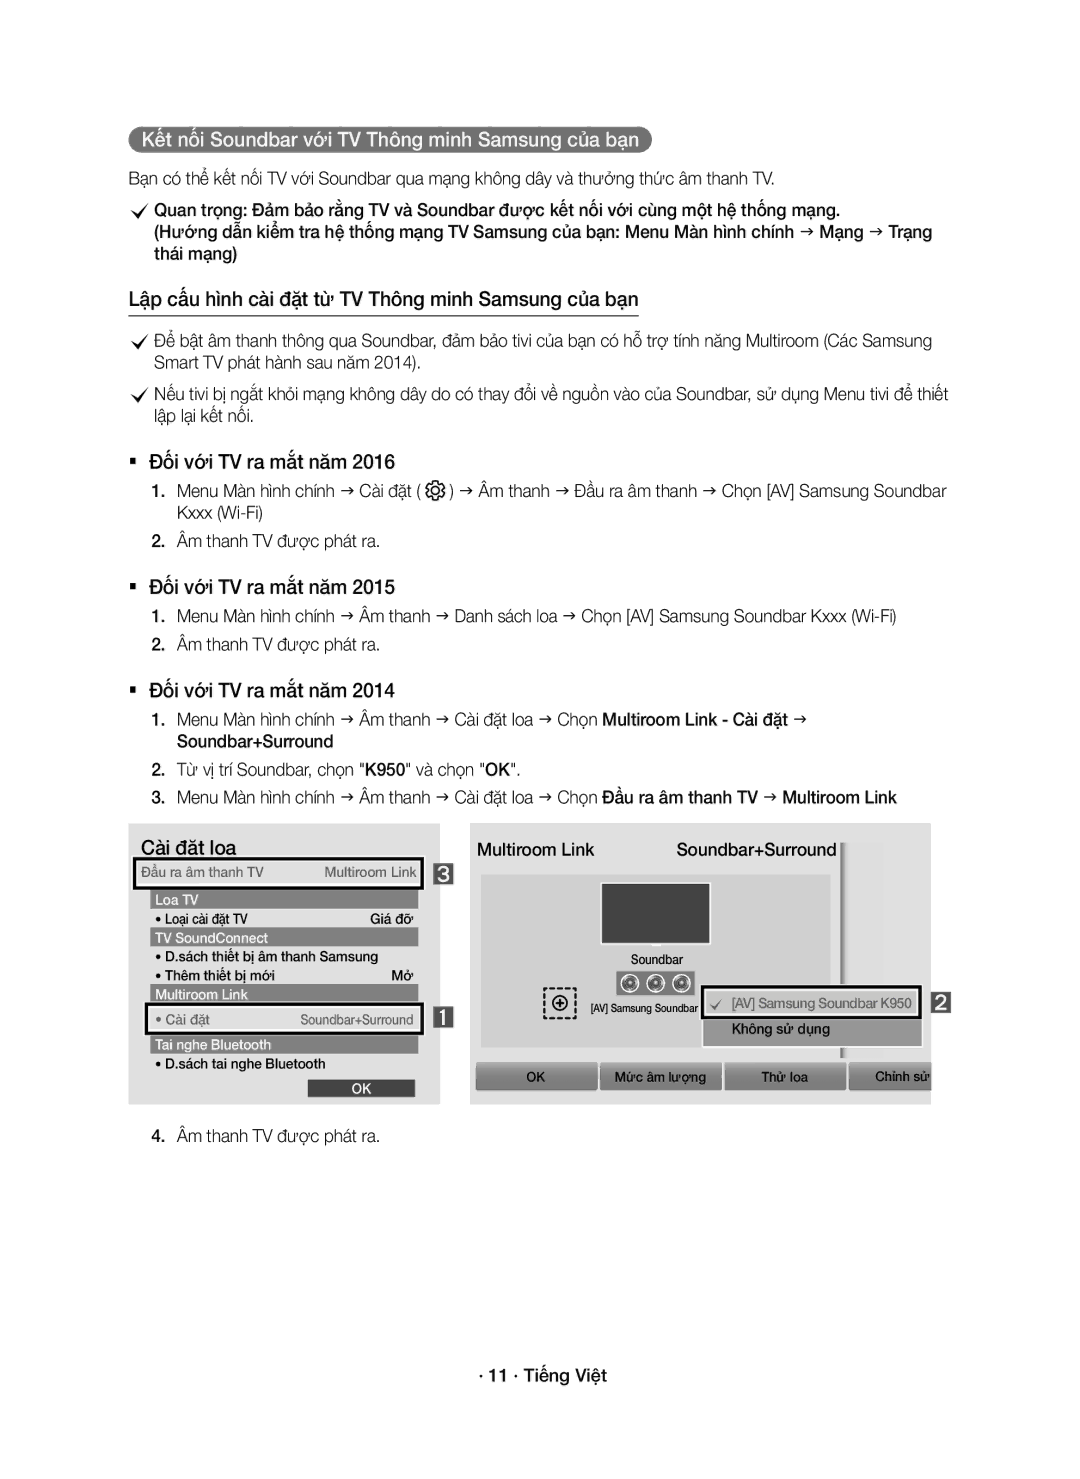 Samsung HW-K950/XV manual Multiroom Link Soundbar+Surround, Âm thanh TV được phát ra · 11 · Tiếng Việt 